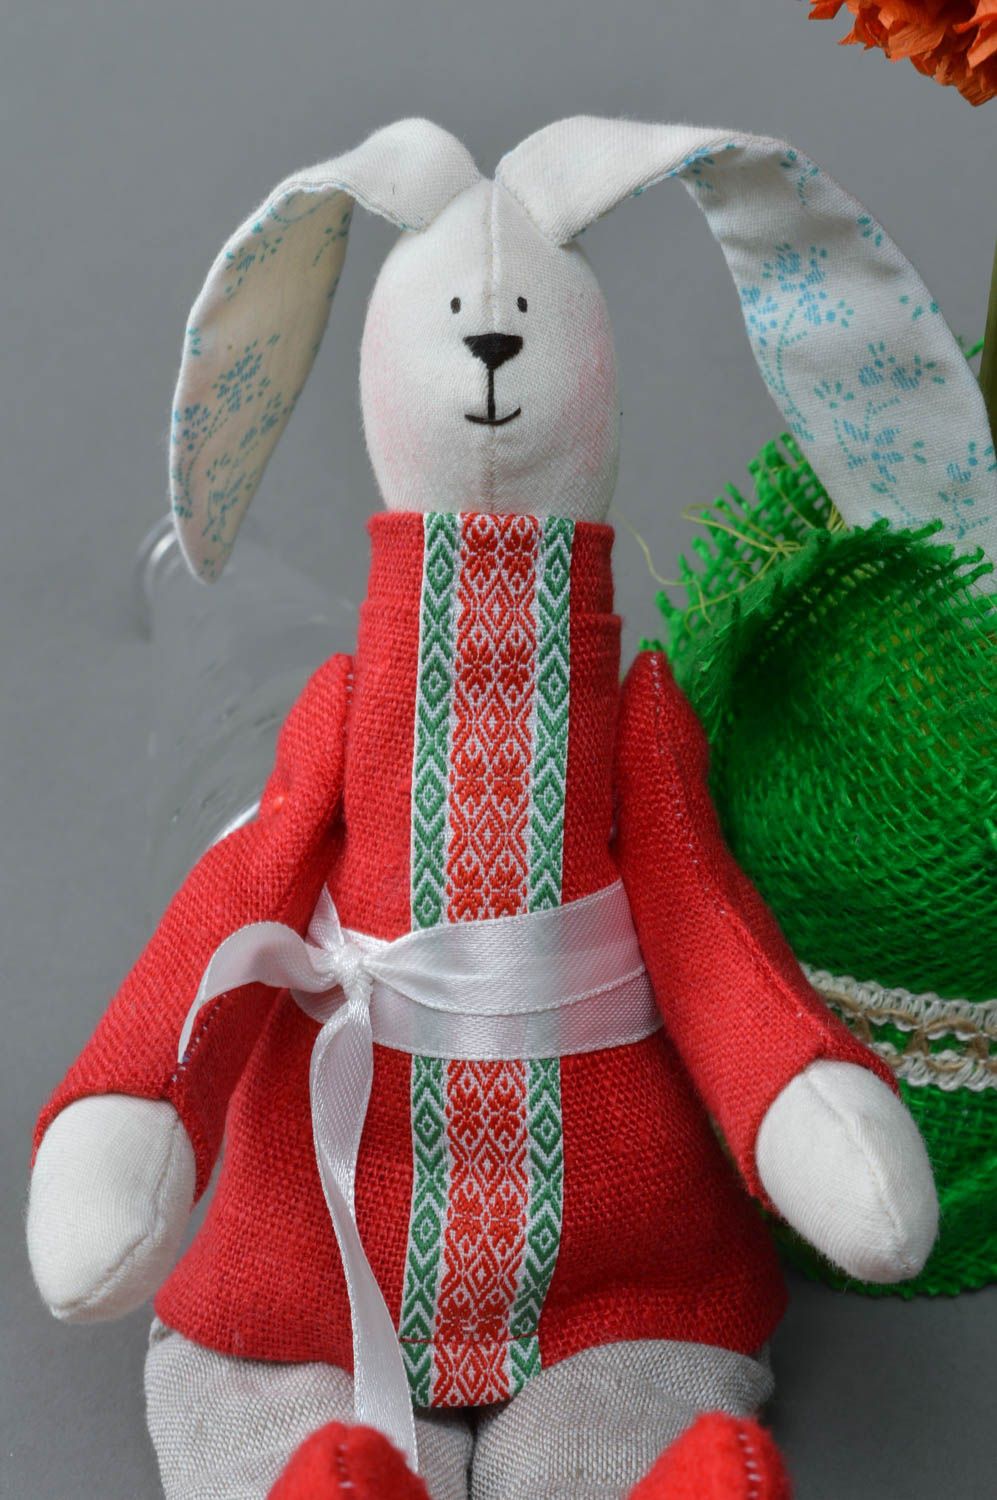 Тканевая игрушка ручной работы в виде зайца в костюме хлопковая для детей или декора дома фото 4